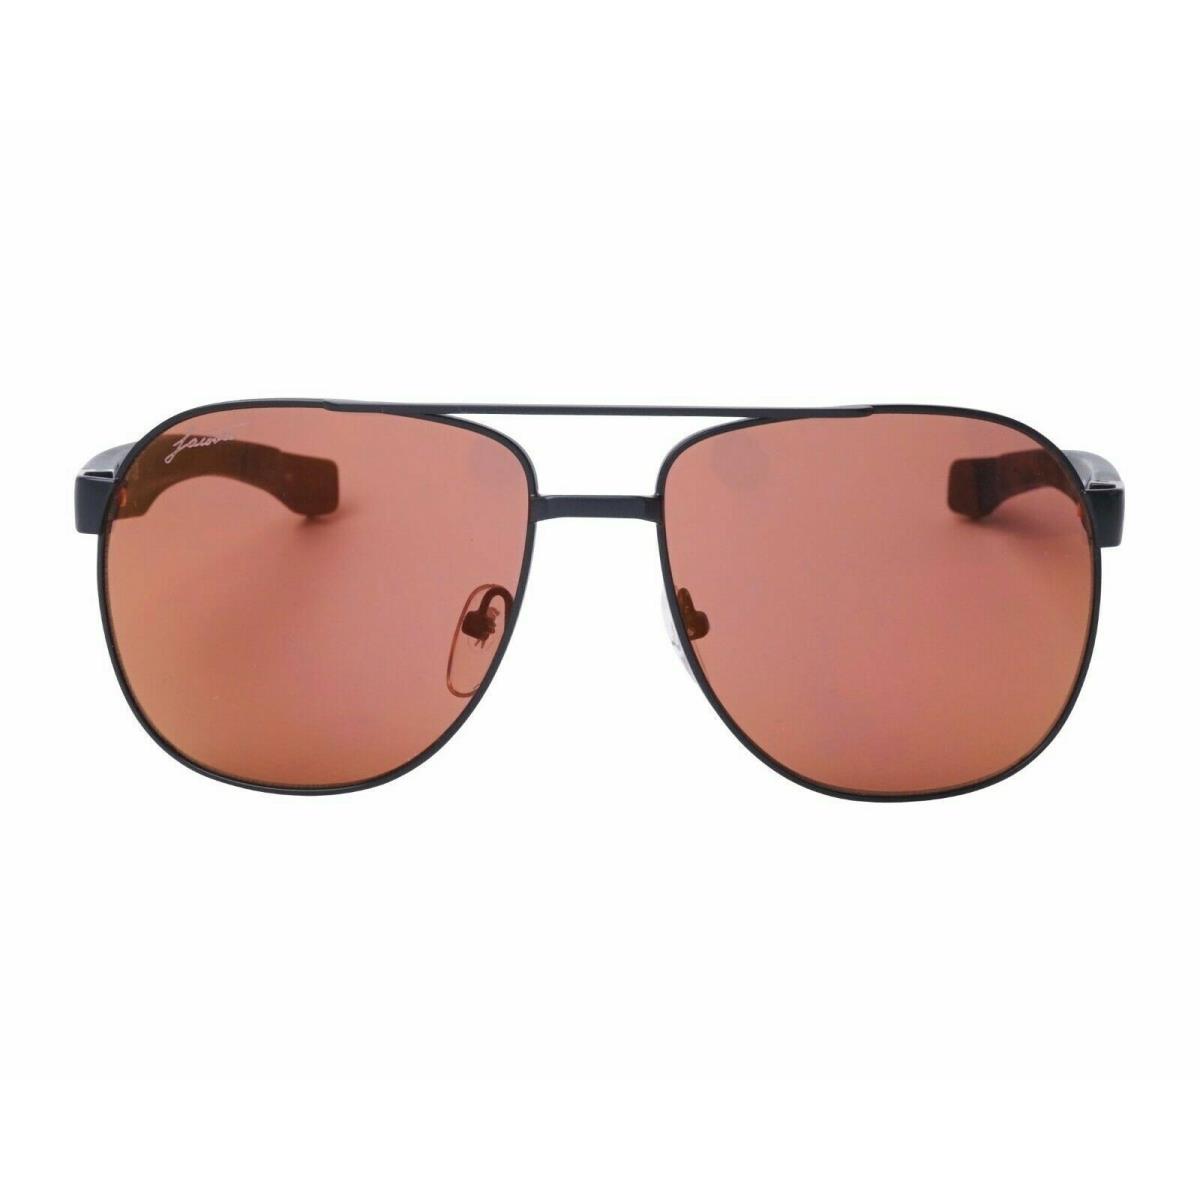 Lacoste L186s 001 57mm Black Metal Plum Lens Sunglasses w/ Temples Lengthen - Frame: Black, Lens: